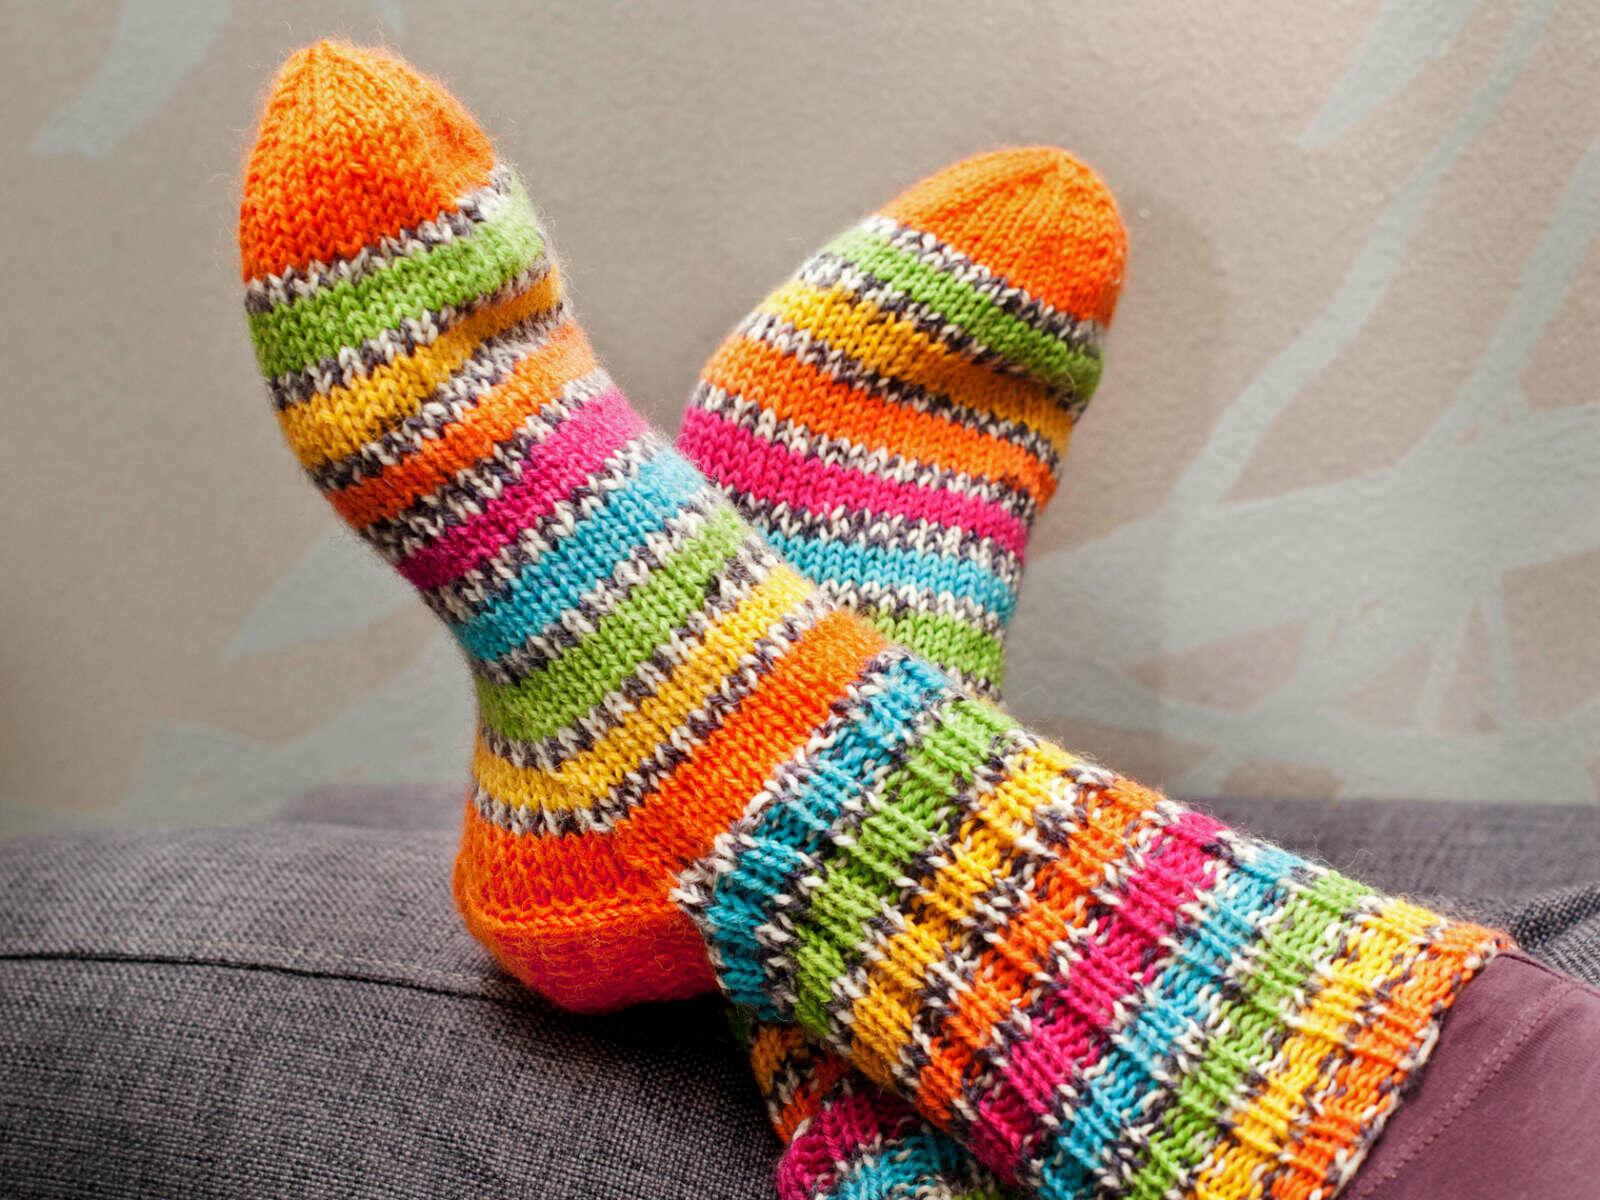 24 октября отмечается День любви к теплым носкам